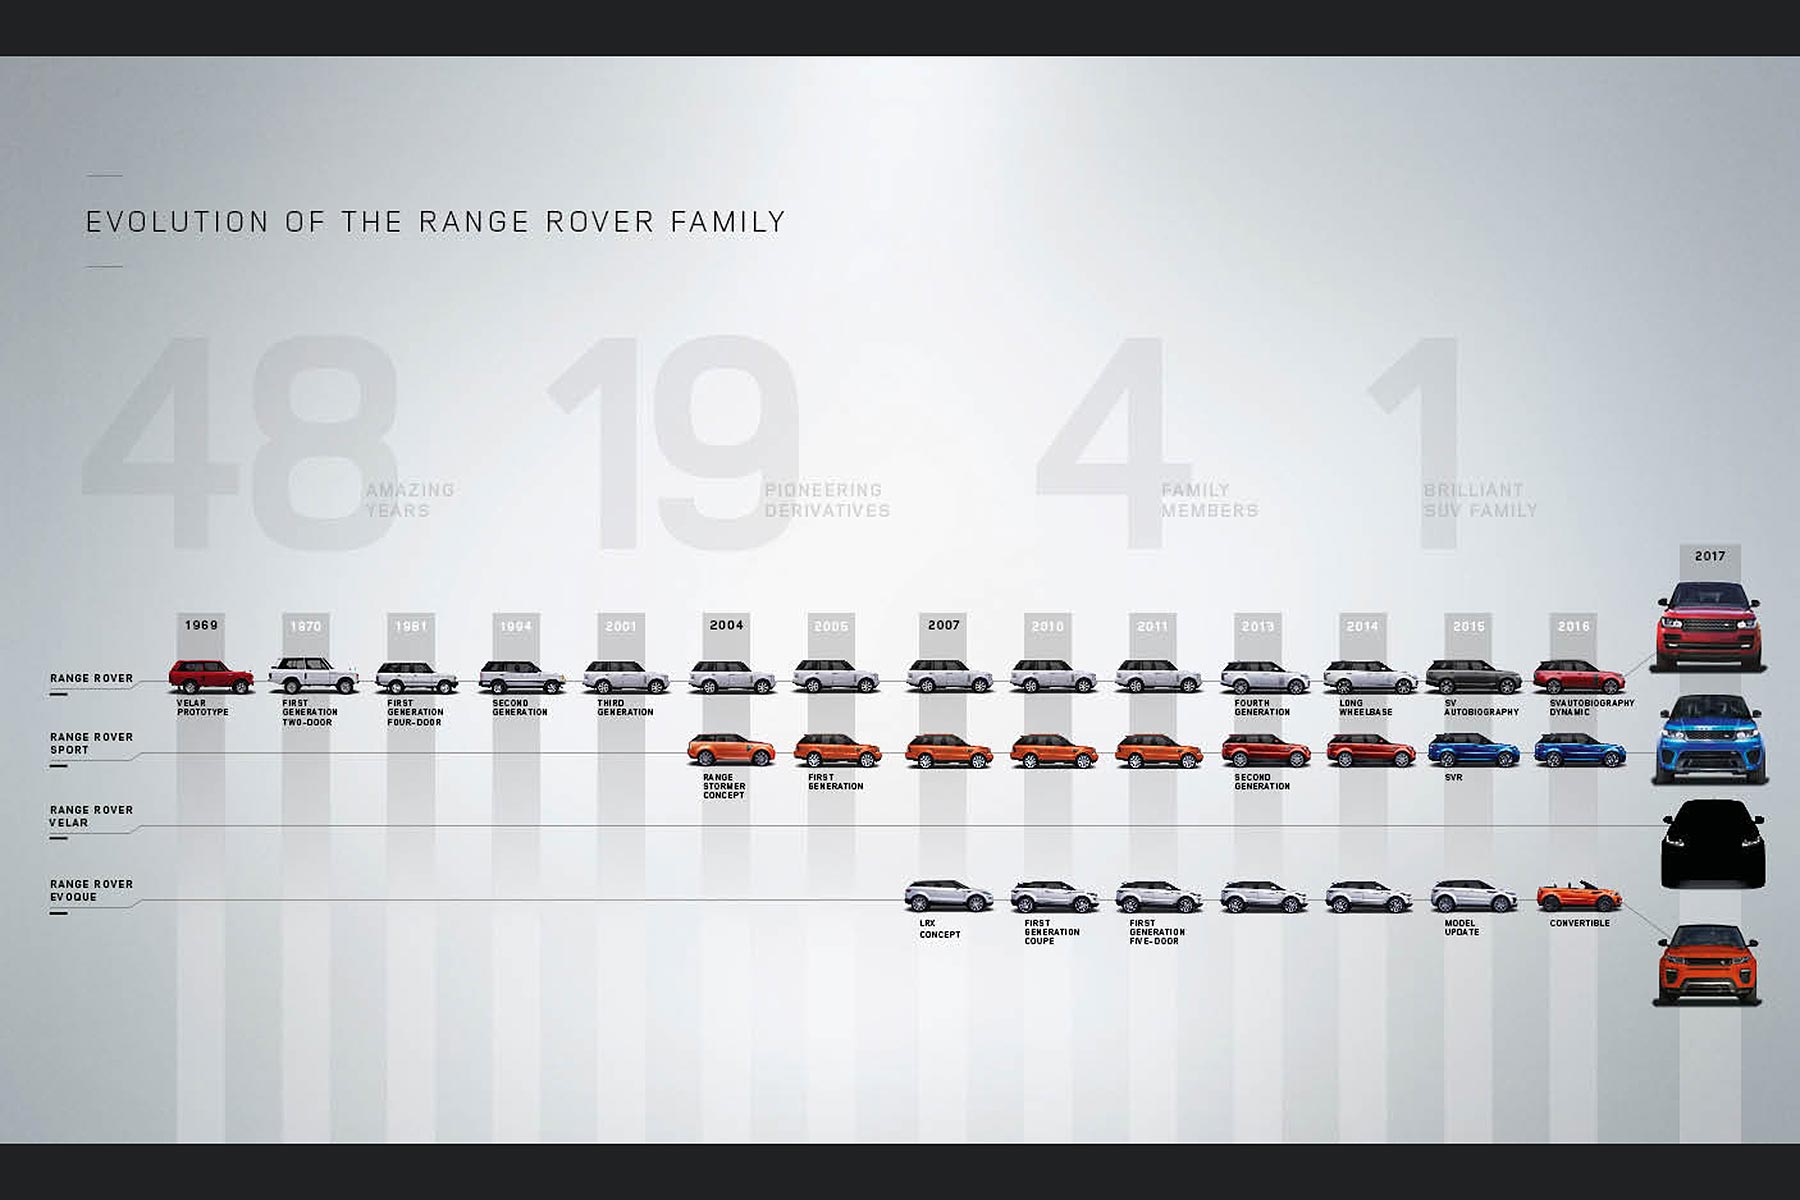 Range Rover family tree